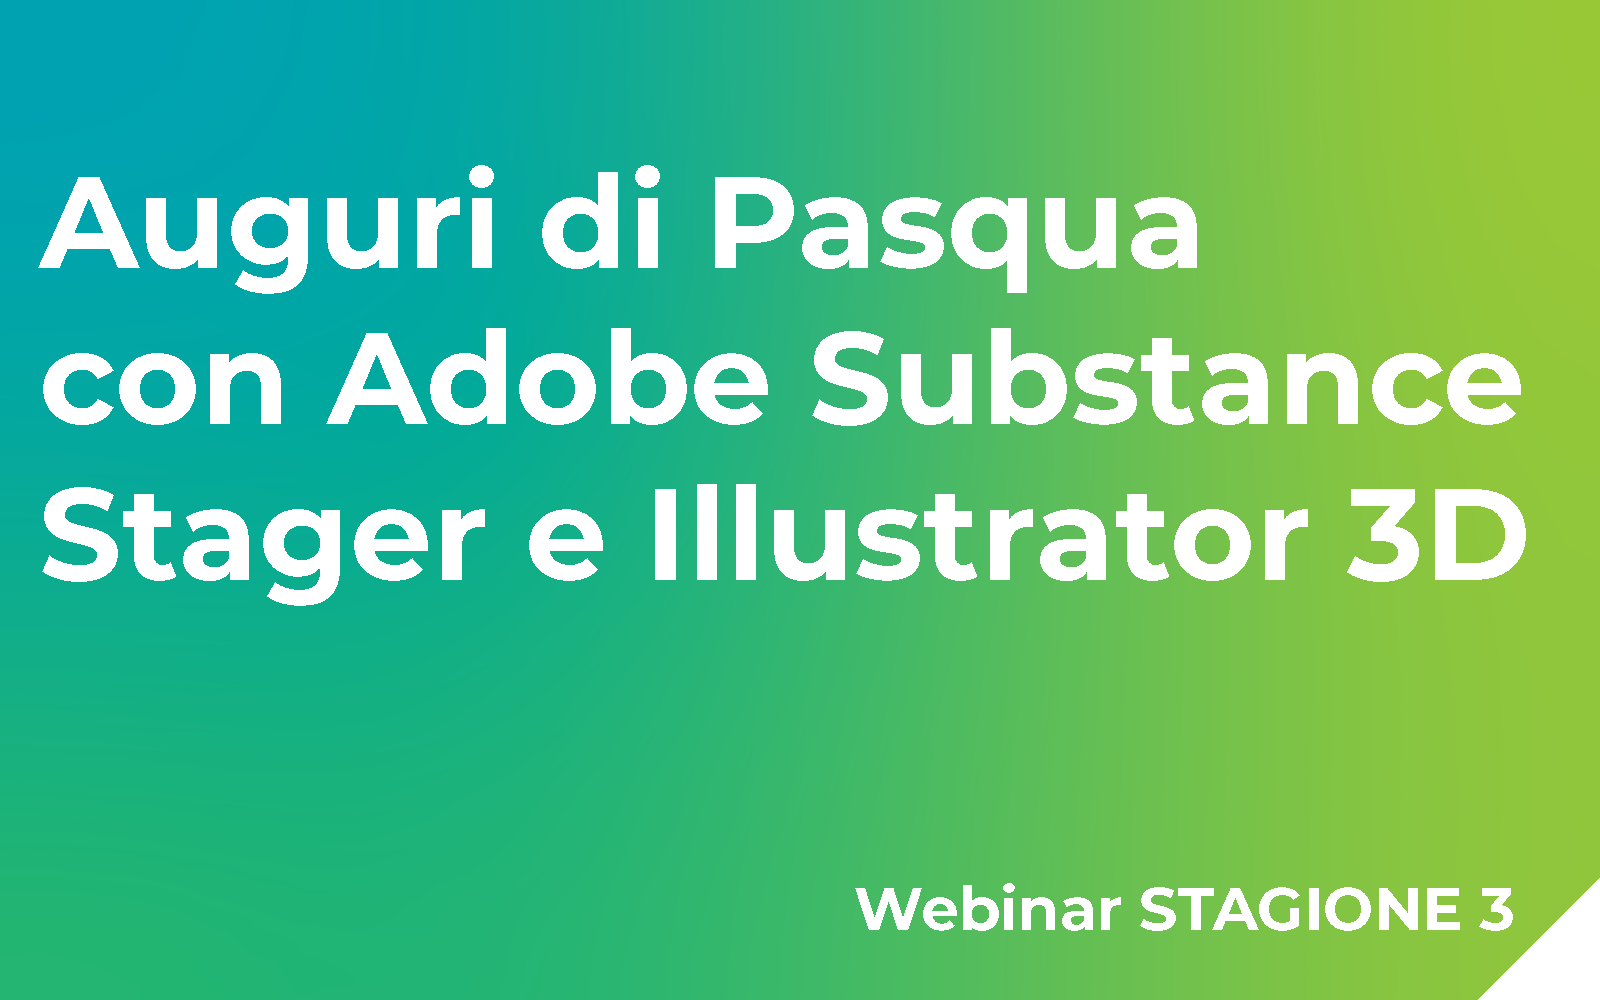 Auguri di Pasqua con Adobe Substance Stager e Illustrator 3D